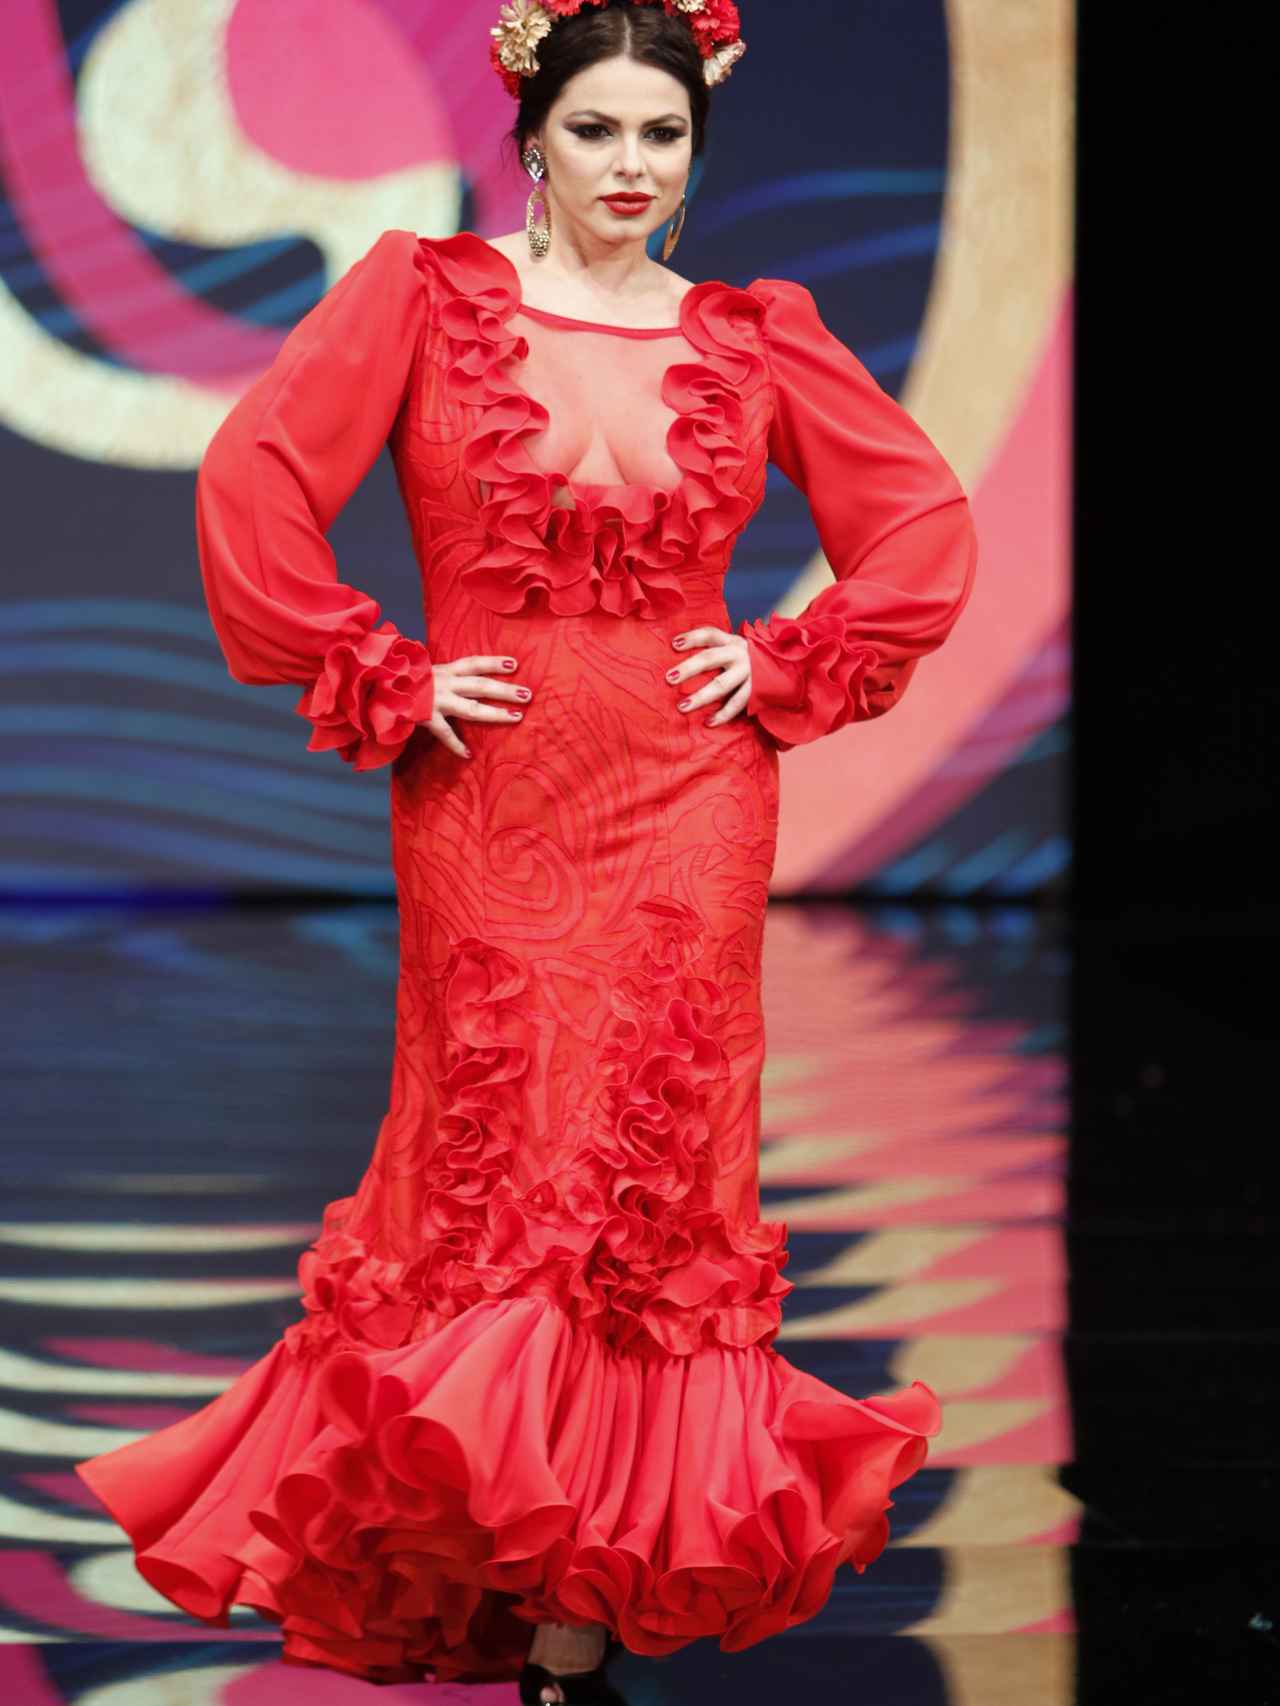 Marisa Jara desfilando en Simof en la moda flamenca curvy.